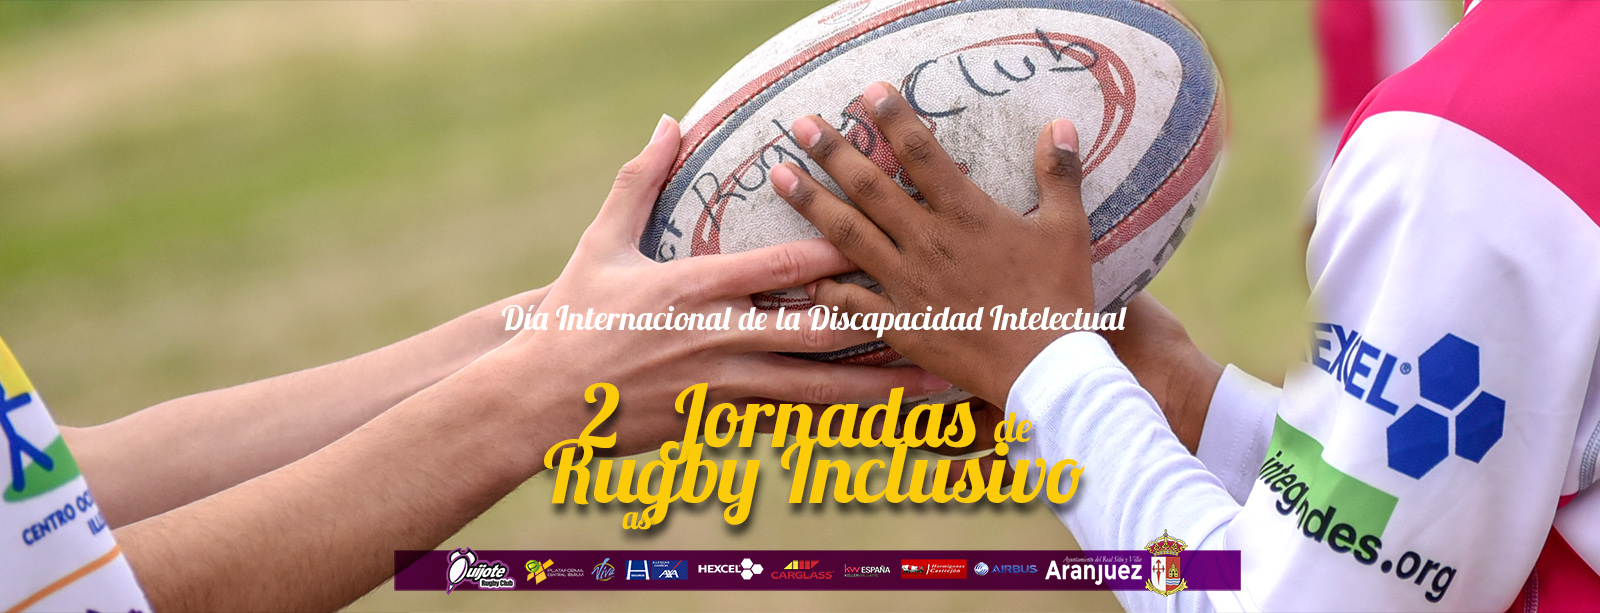 Segundas Jornadas de Rugby Inclusivo por el Día Internacional de la Discapacidad Intelectual